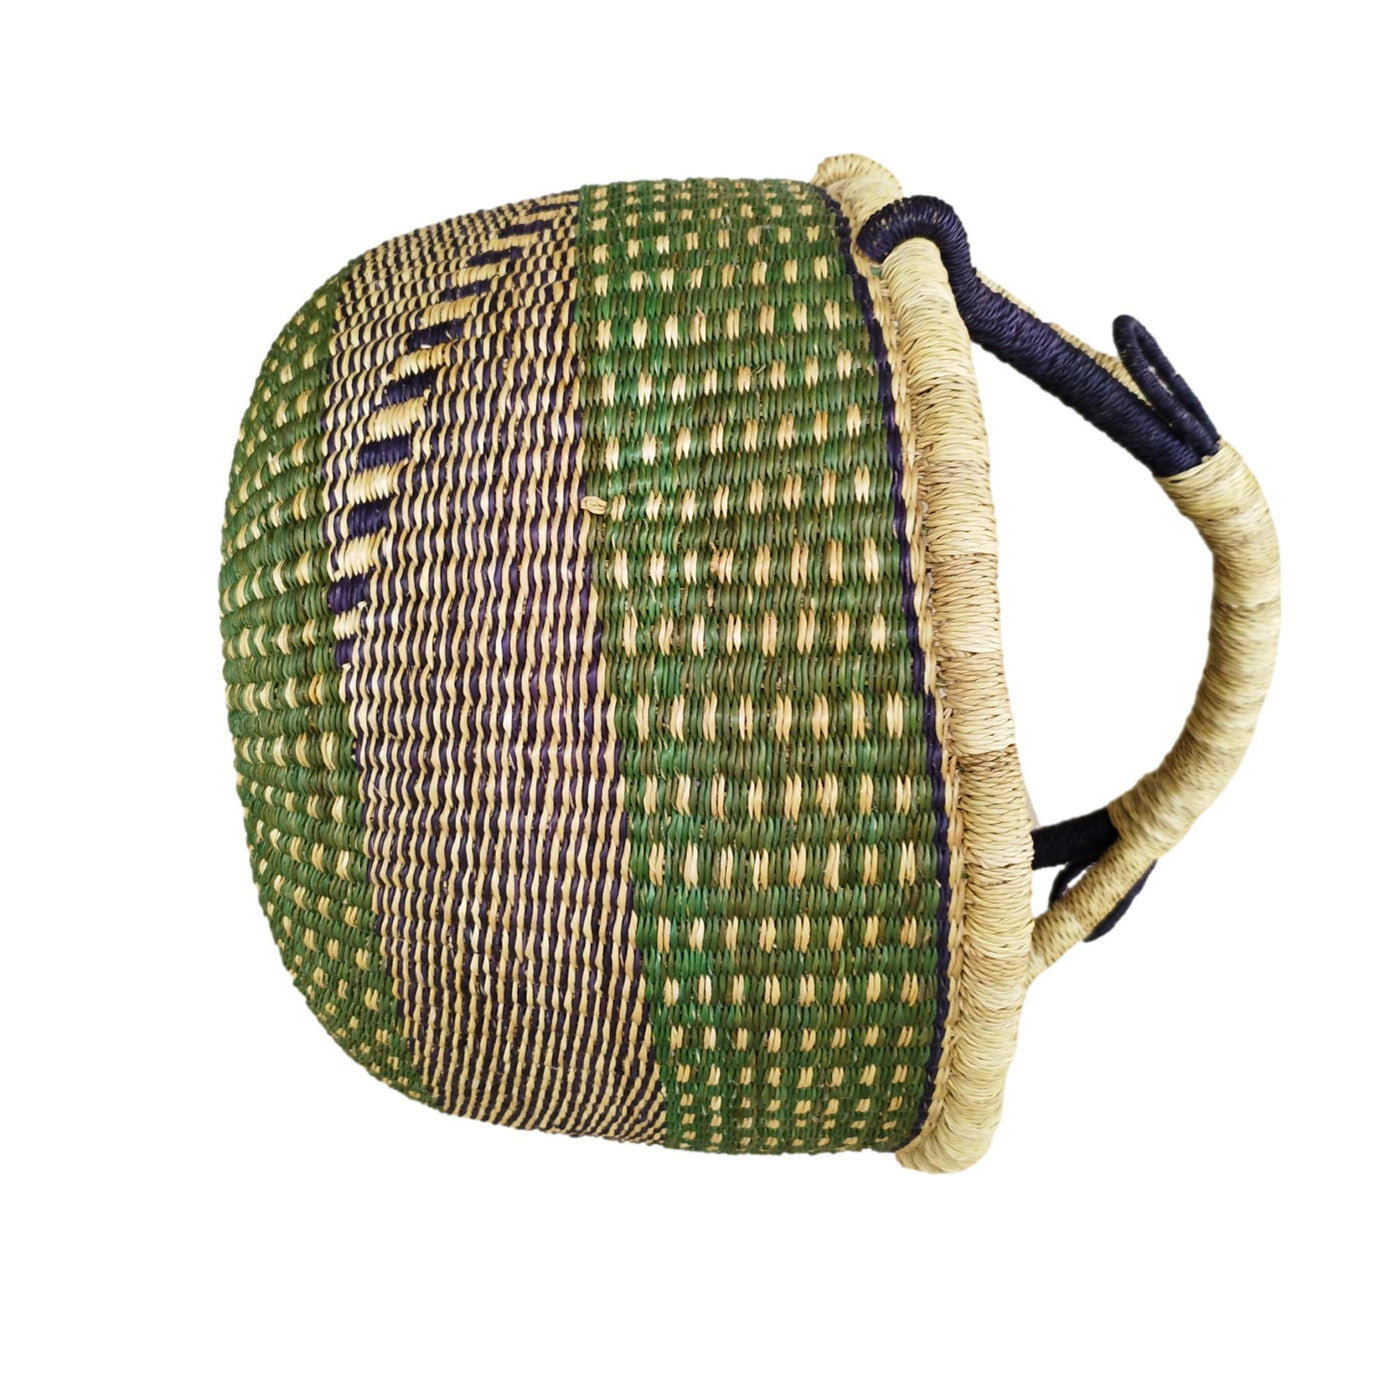 Market Basket | Storage basket | African basket | Bolga Market Basket | Woven basket | Straw bag | African market basket| handmade Basket